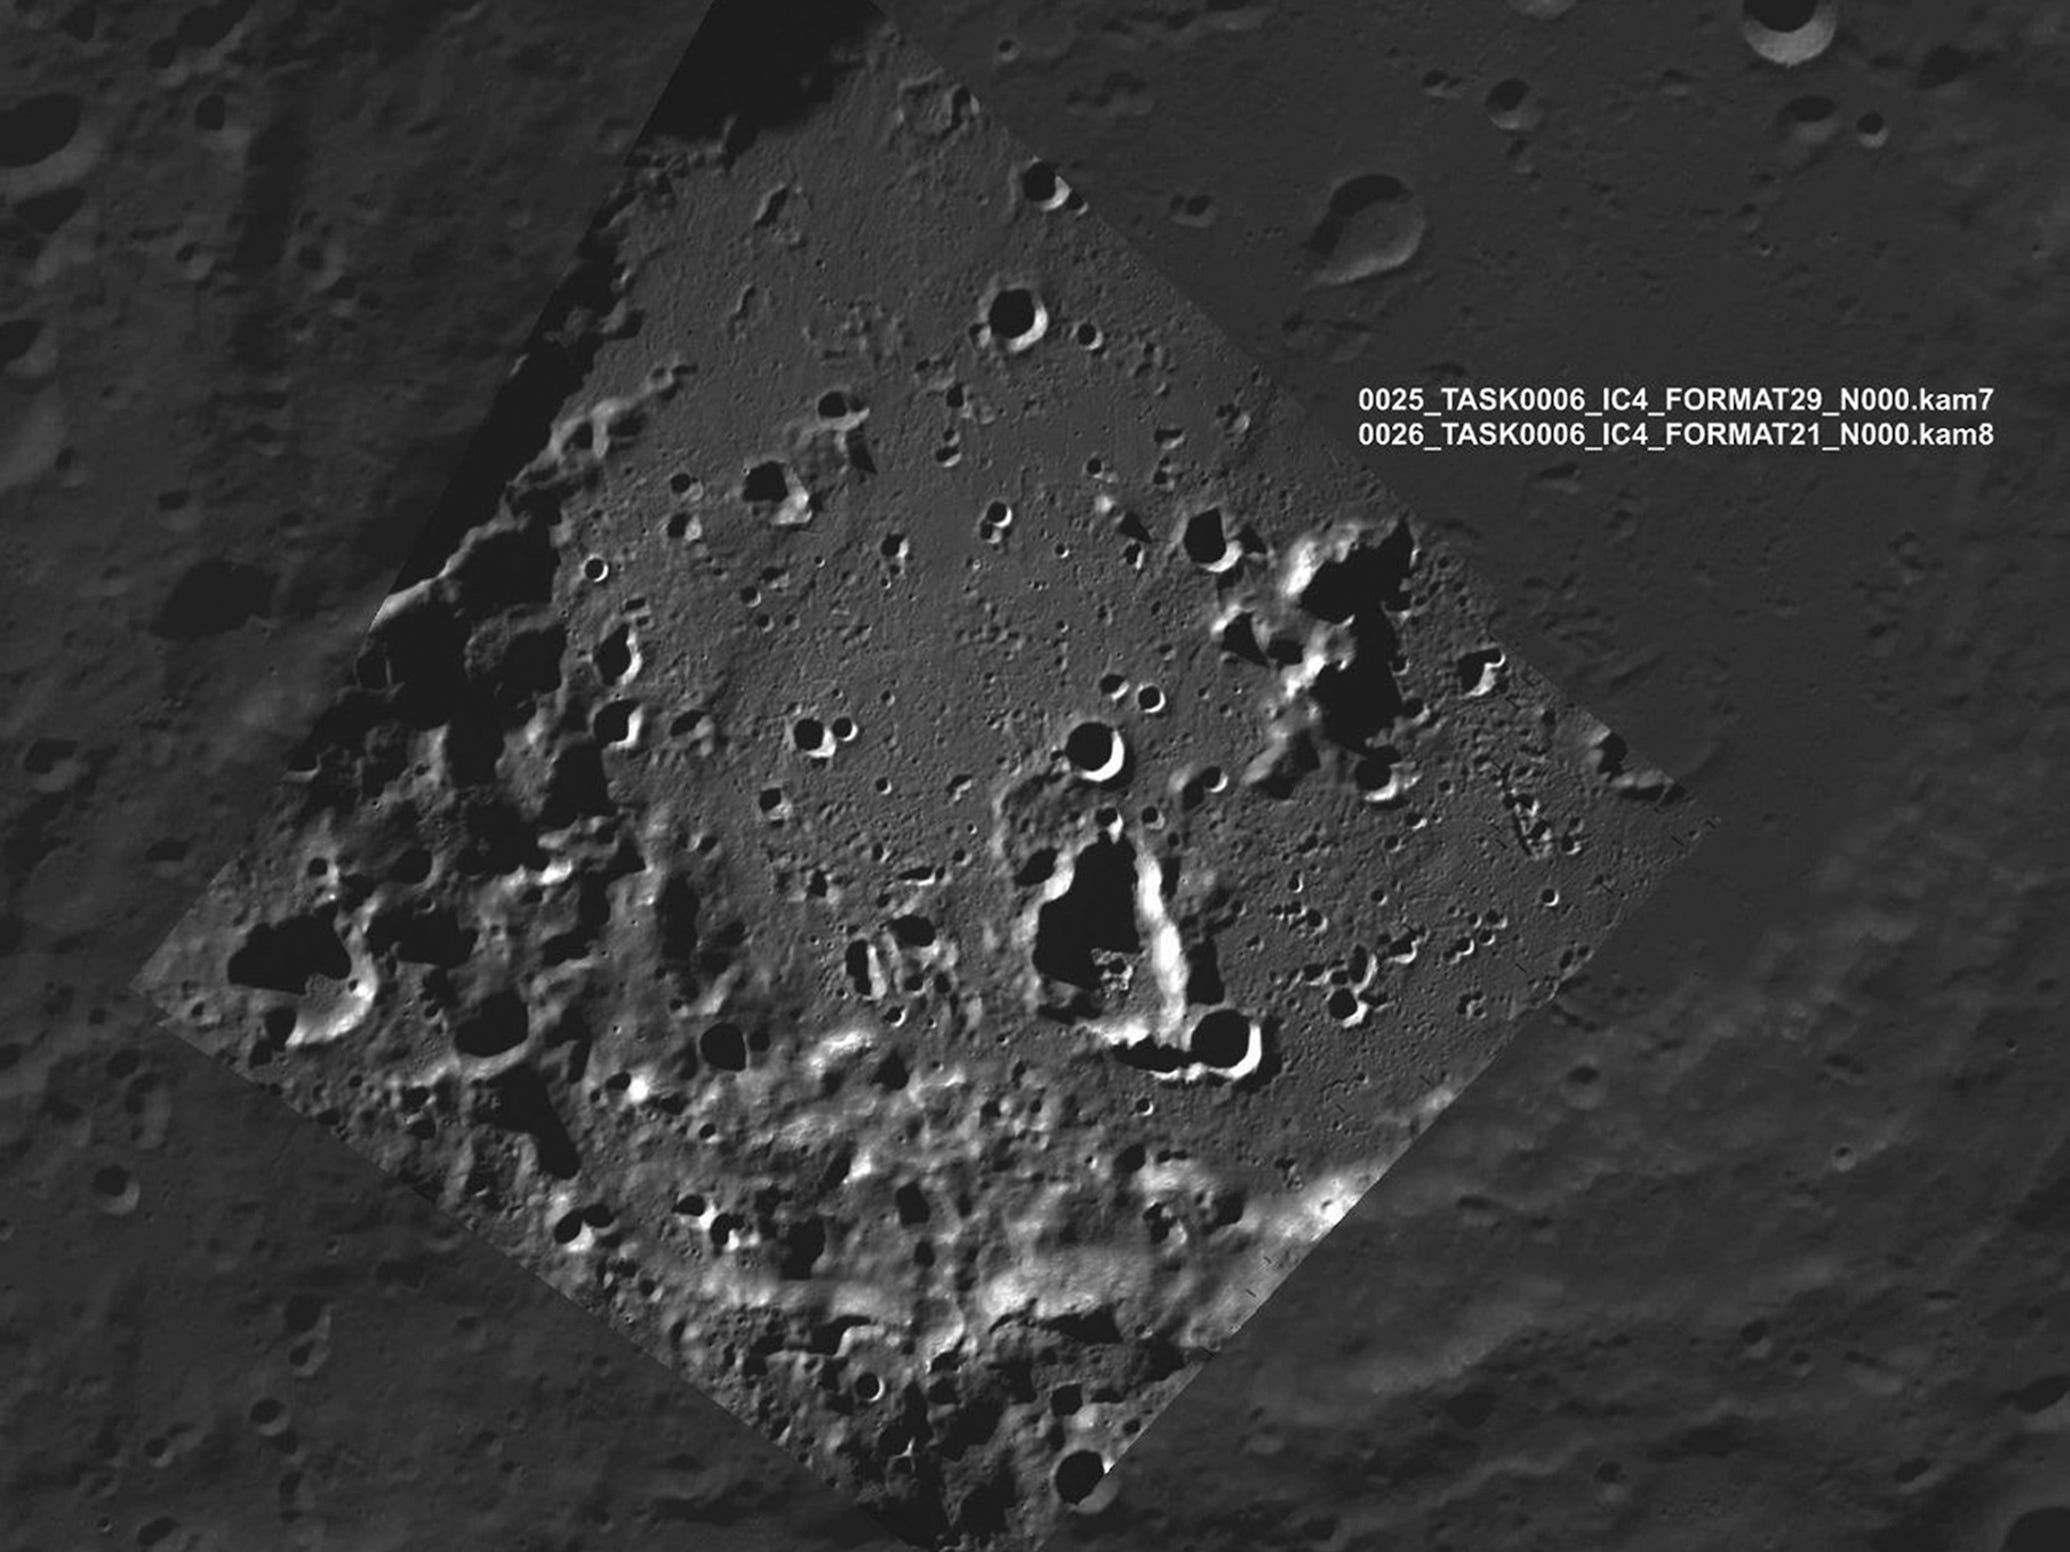 Oberfläche des mondgrauen, felsigen Kraters